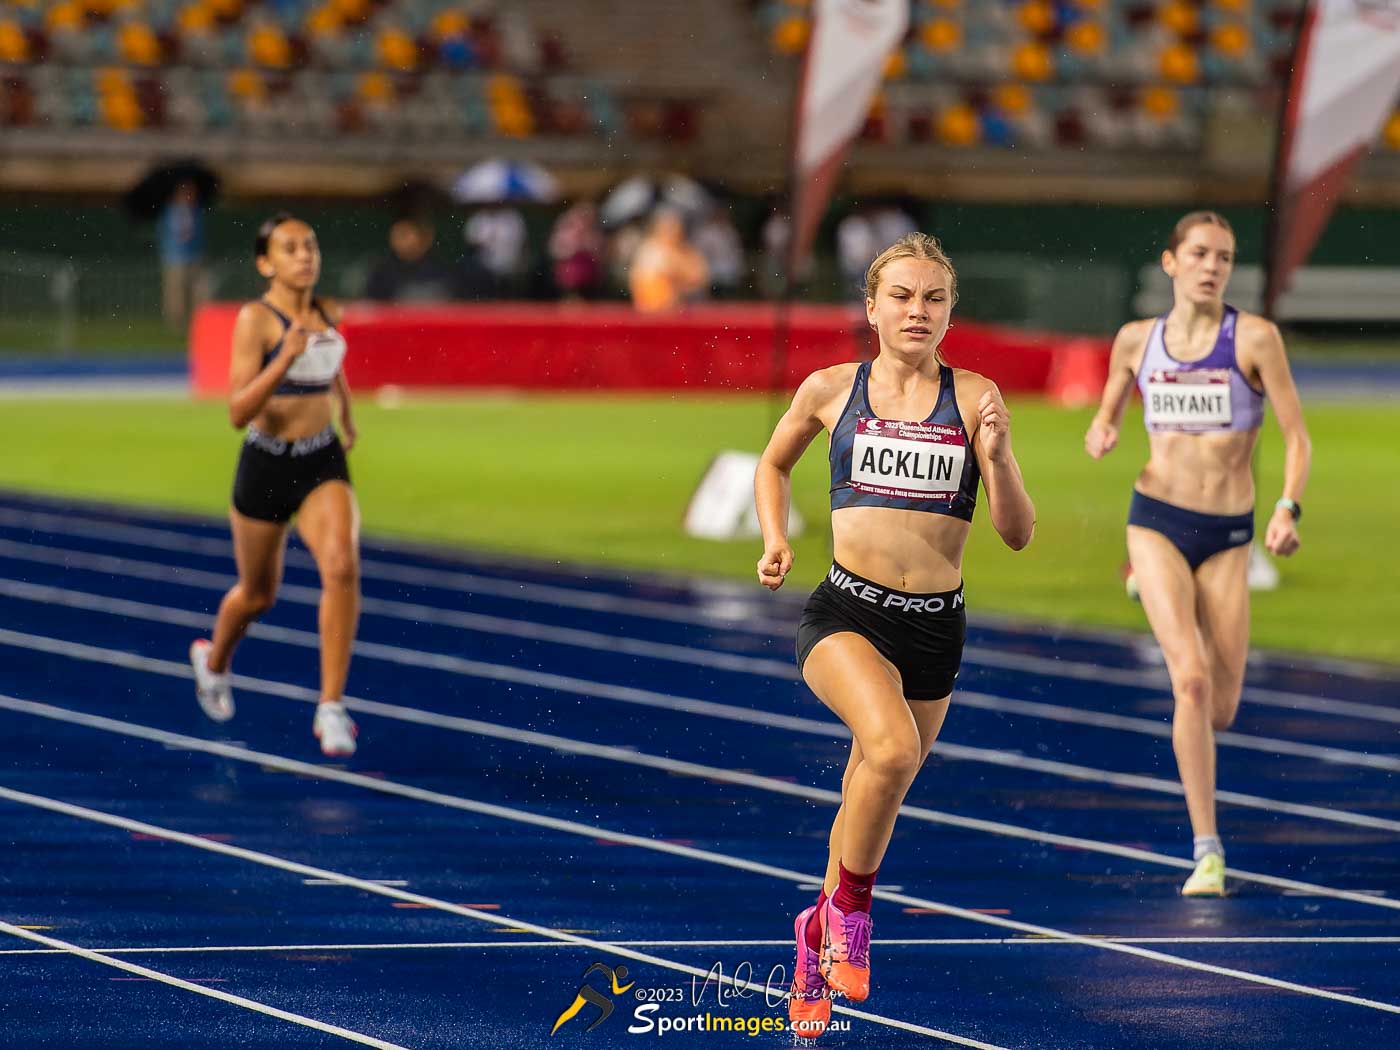 Rose Acklin, Heat 1, Girls Under 16 400m